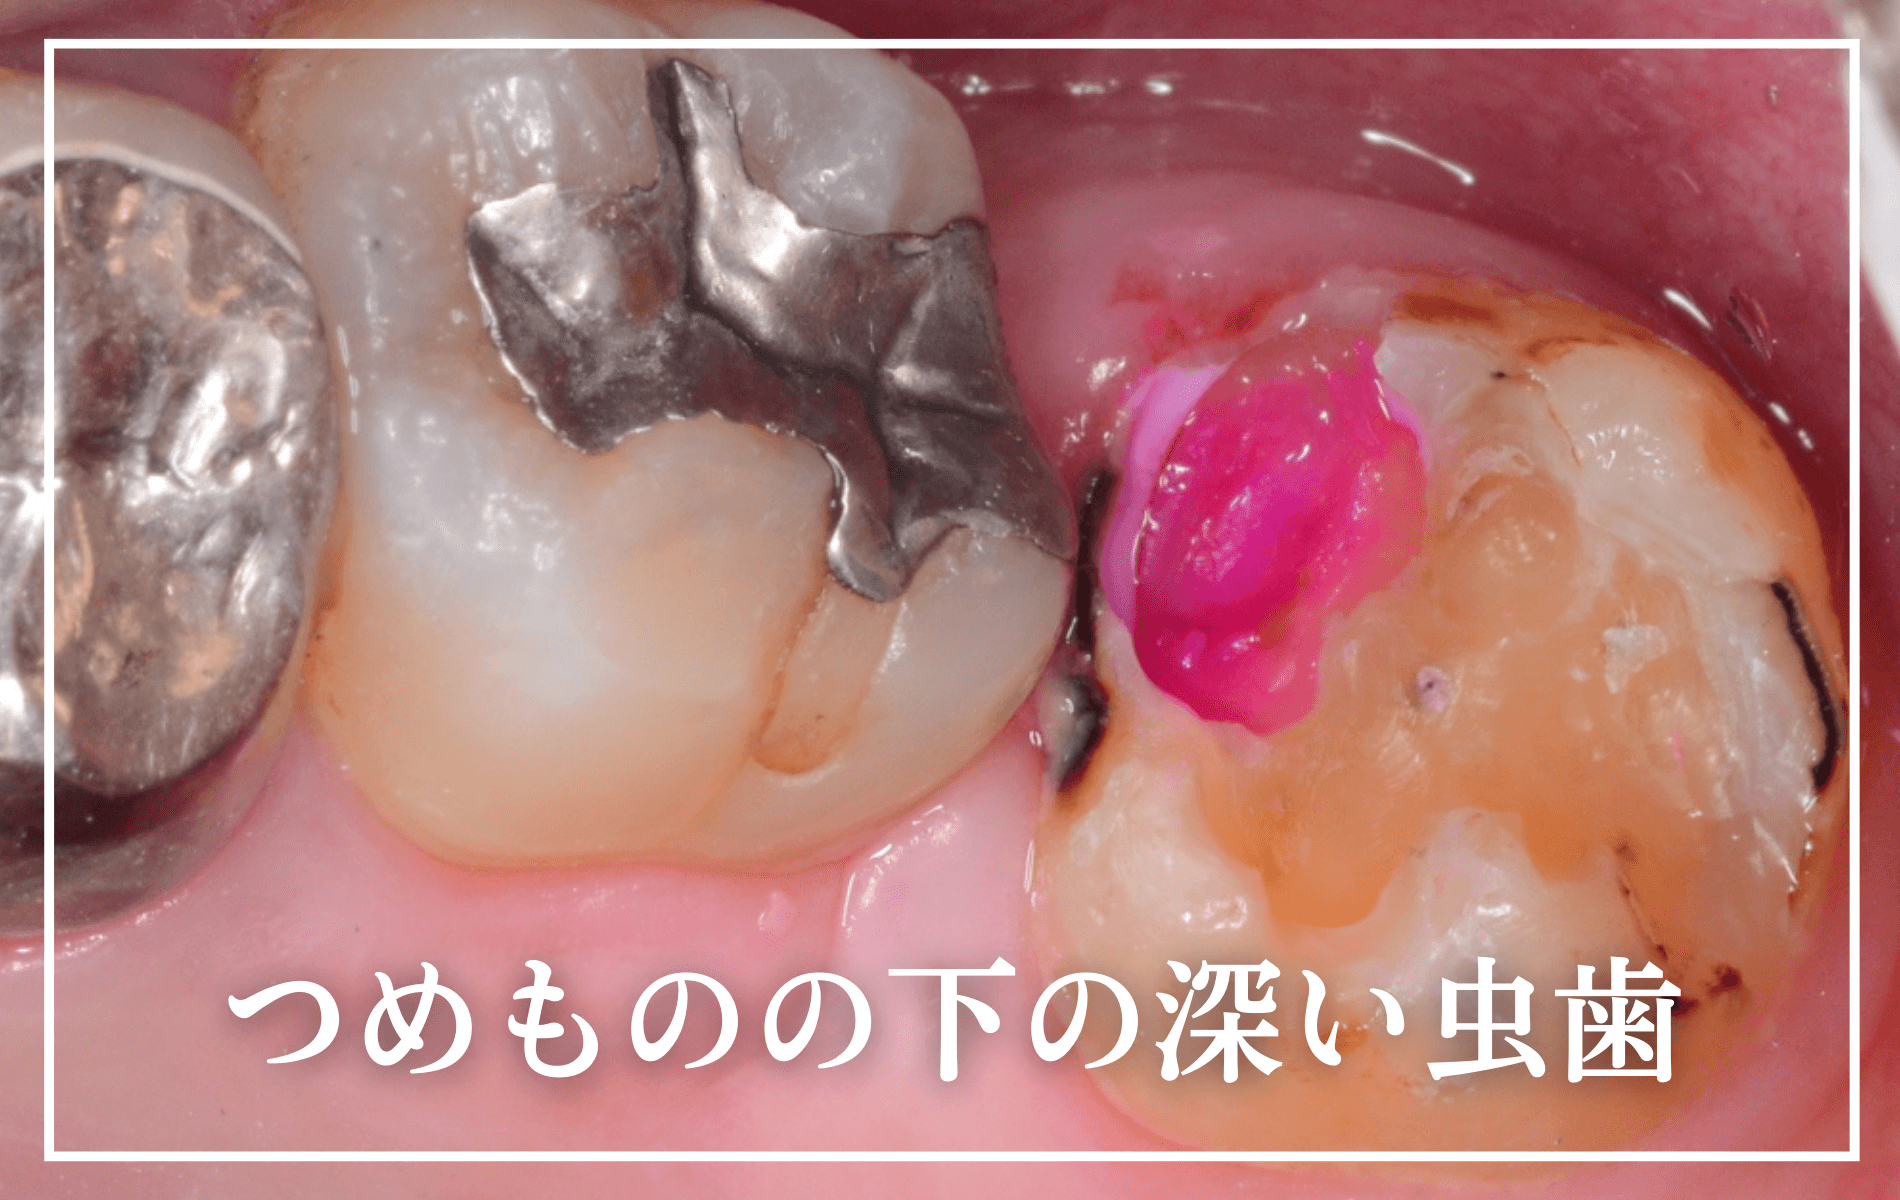 つめものの下の深い虫歯(画像)-タイトル